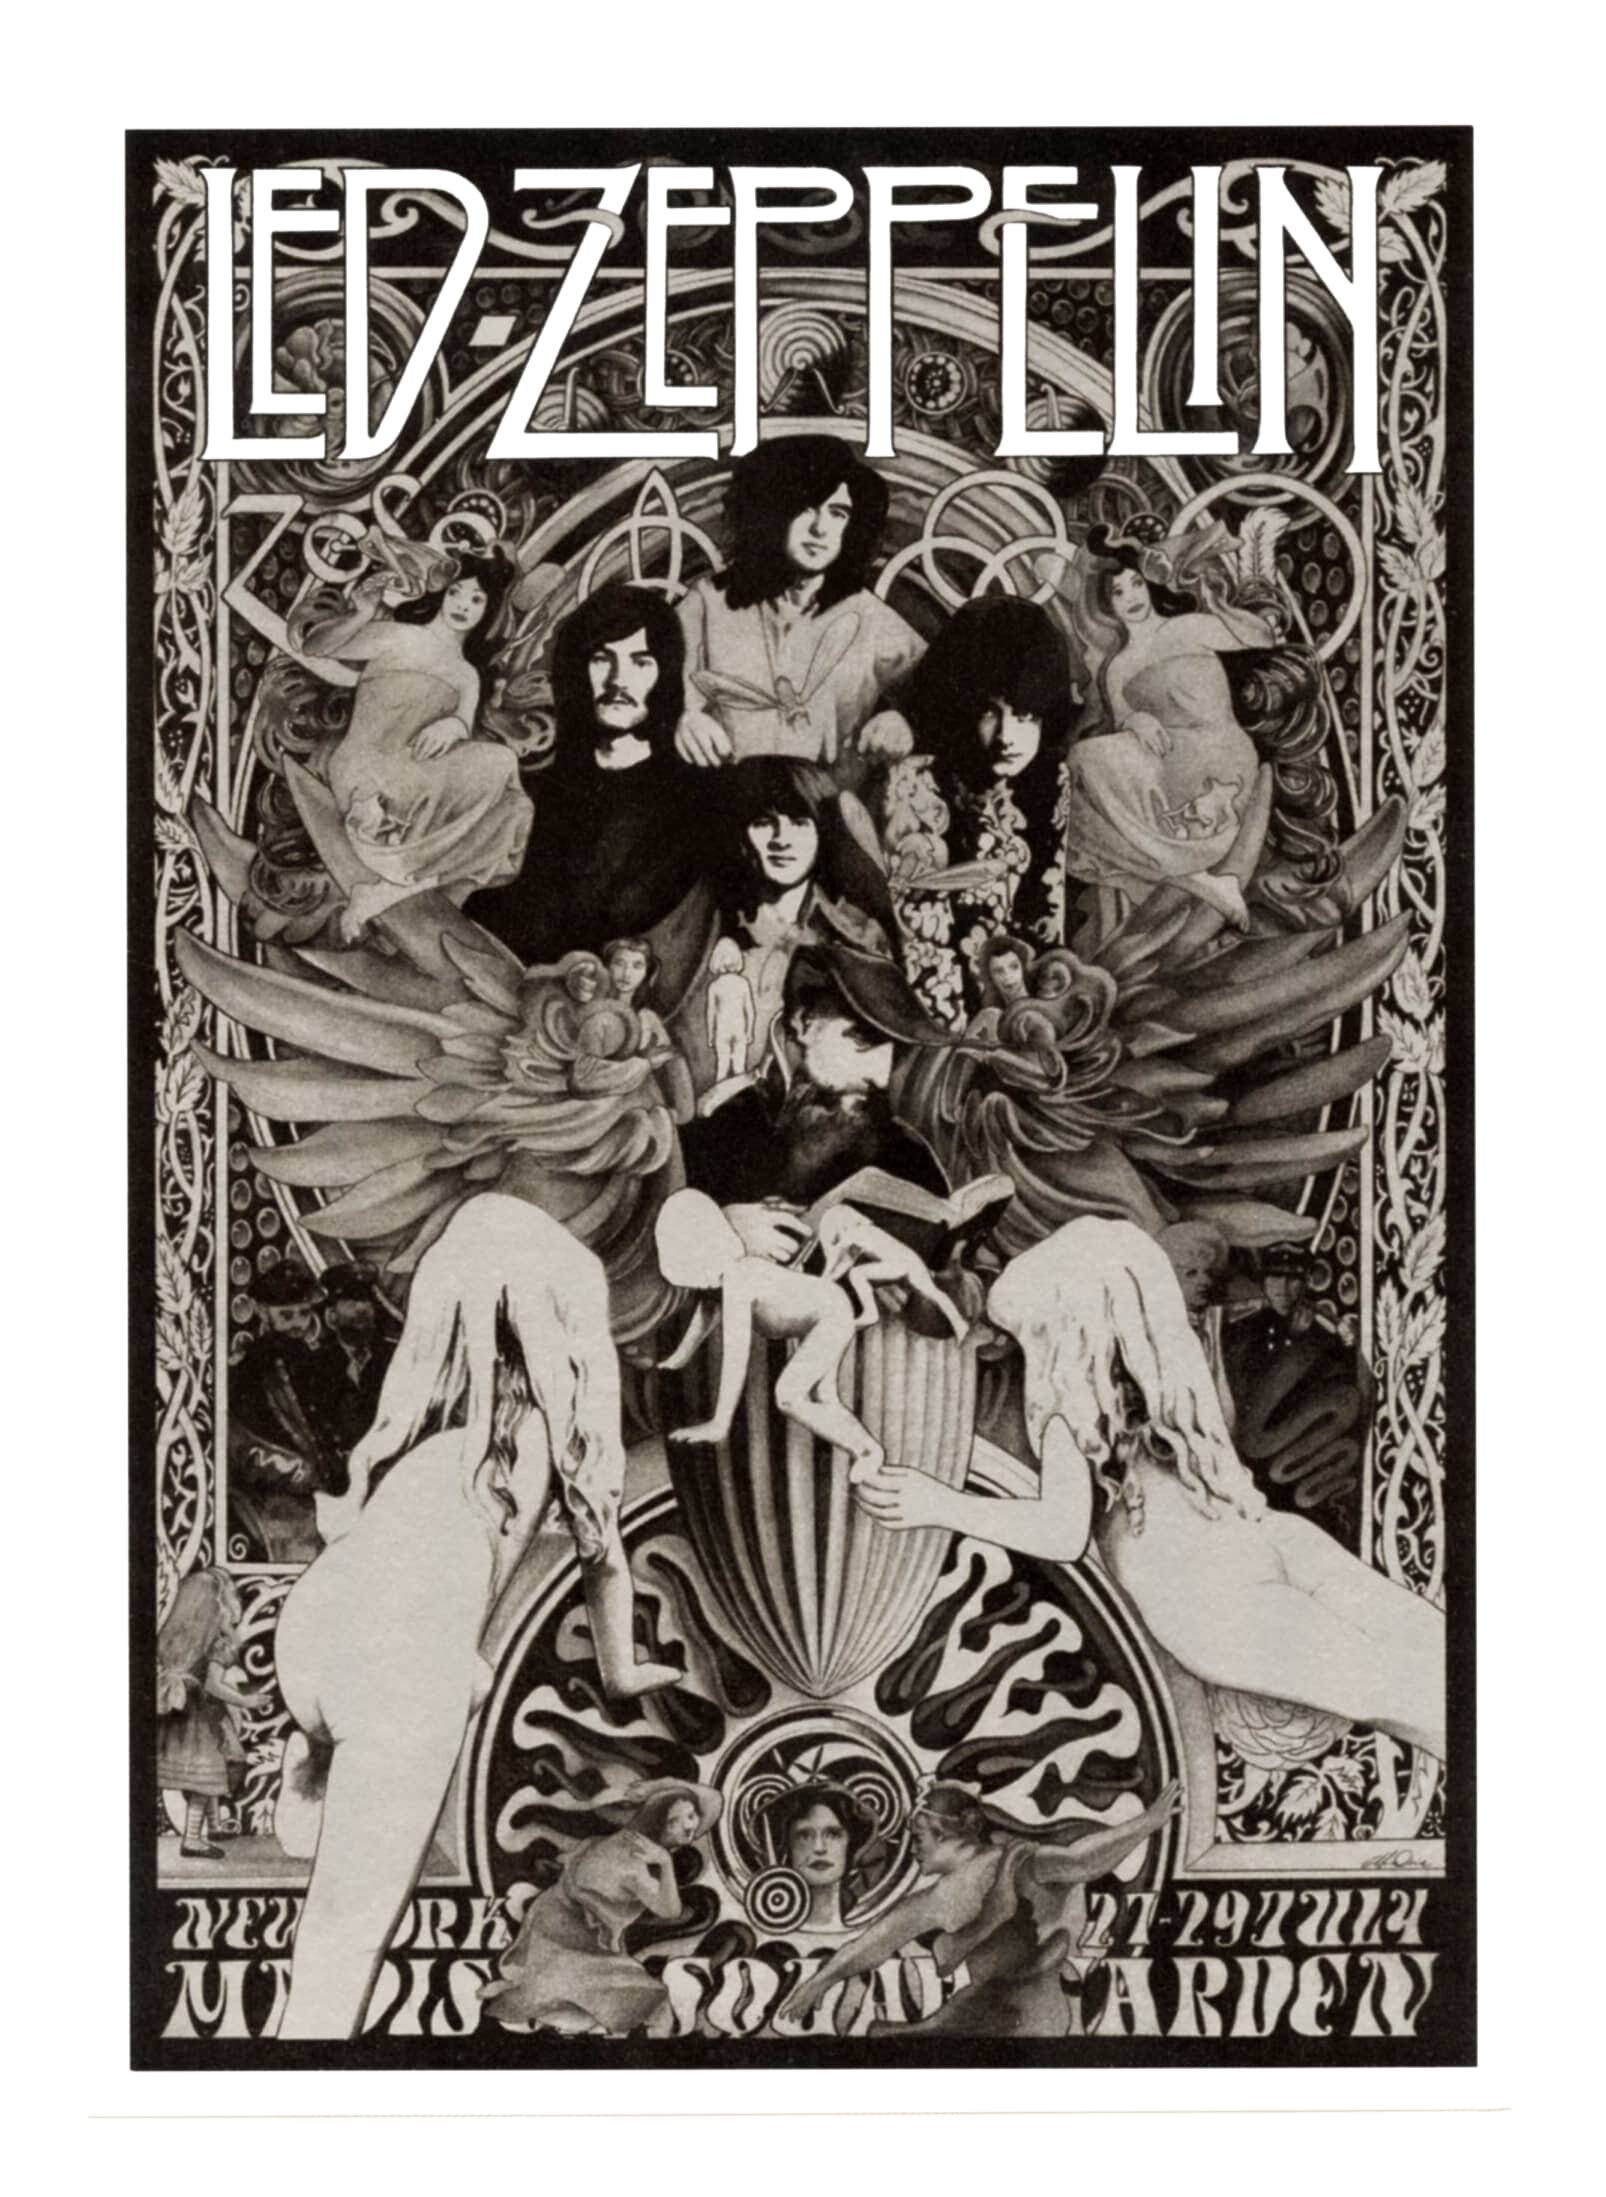 Led Zeppelin Handbill Commemorative Square 1973 Steve Harradine | Vintage Concert Poster Ticketstbus Handbills